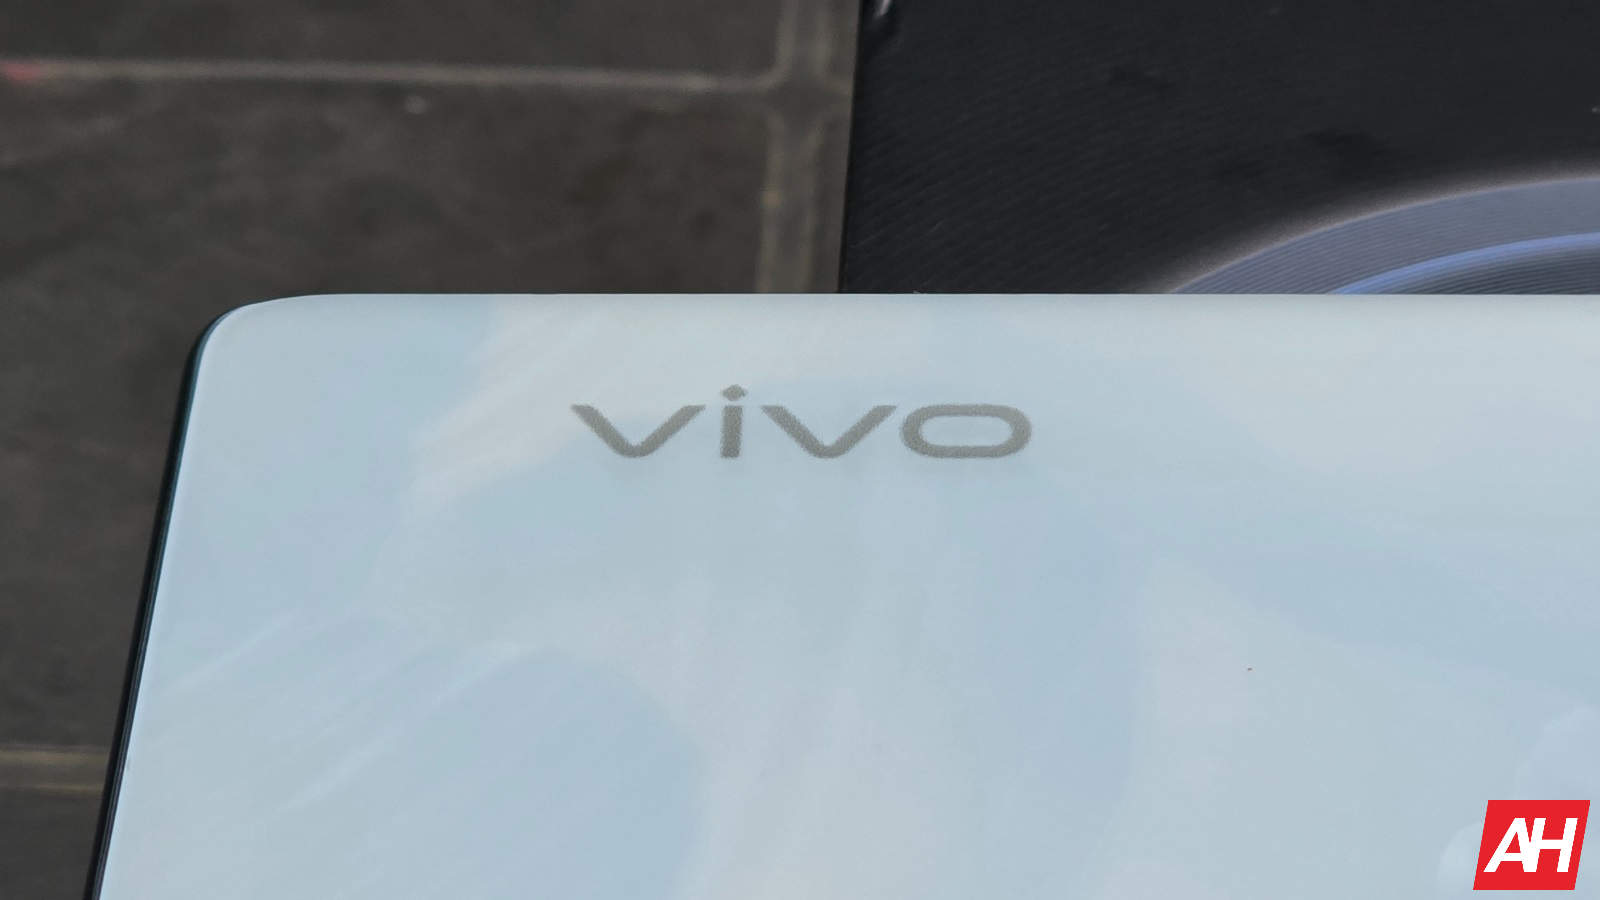 Vivo anuncia ‘BlueImage’, nueva marca para su tecnología de cámara